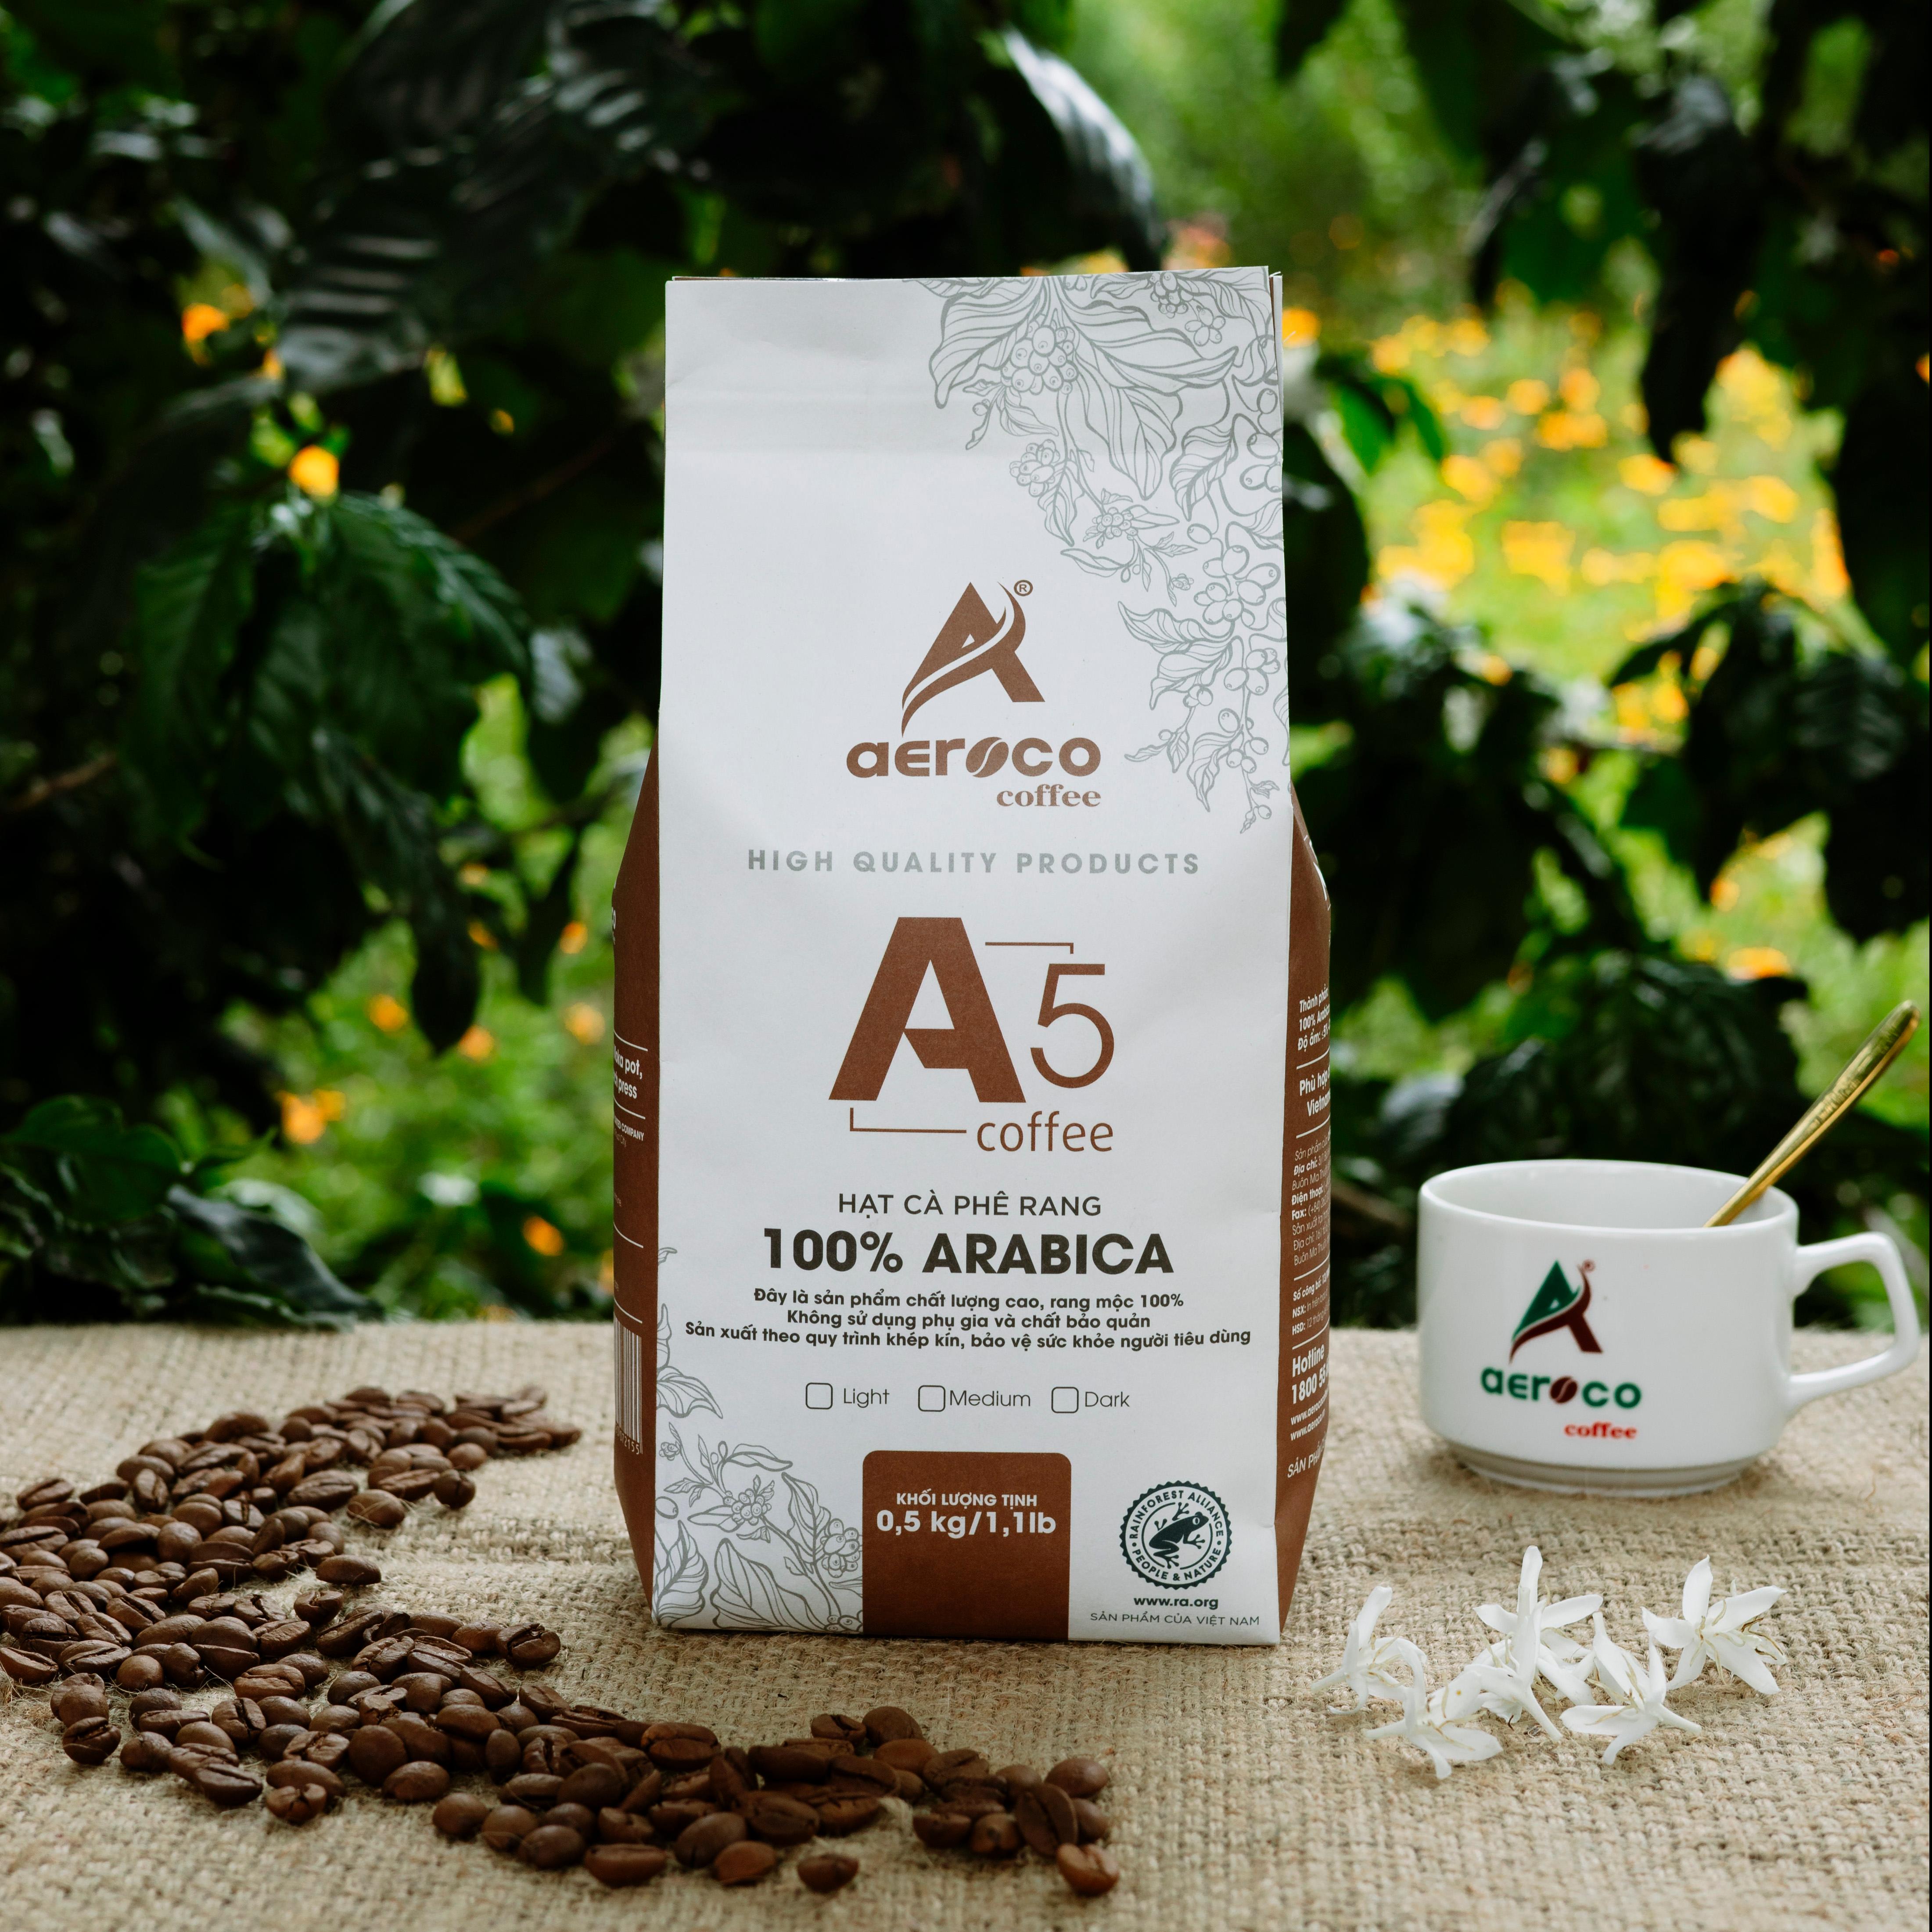 Túi 500g_Cà phê AEROCO hạt rang A5 (100% Arabica) nguyên chất 100% rang mộc hậu vị ngọt thơm quyến rũ, phù hợp pha máy và pha phin